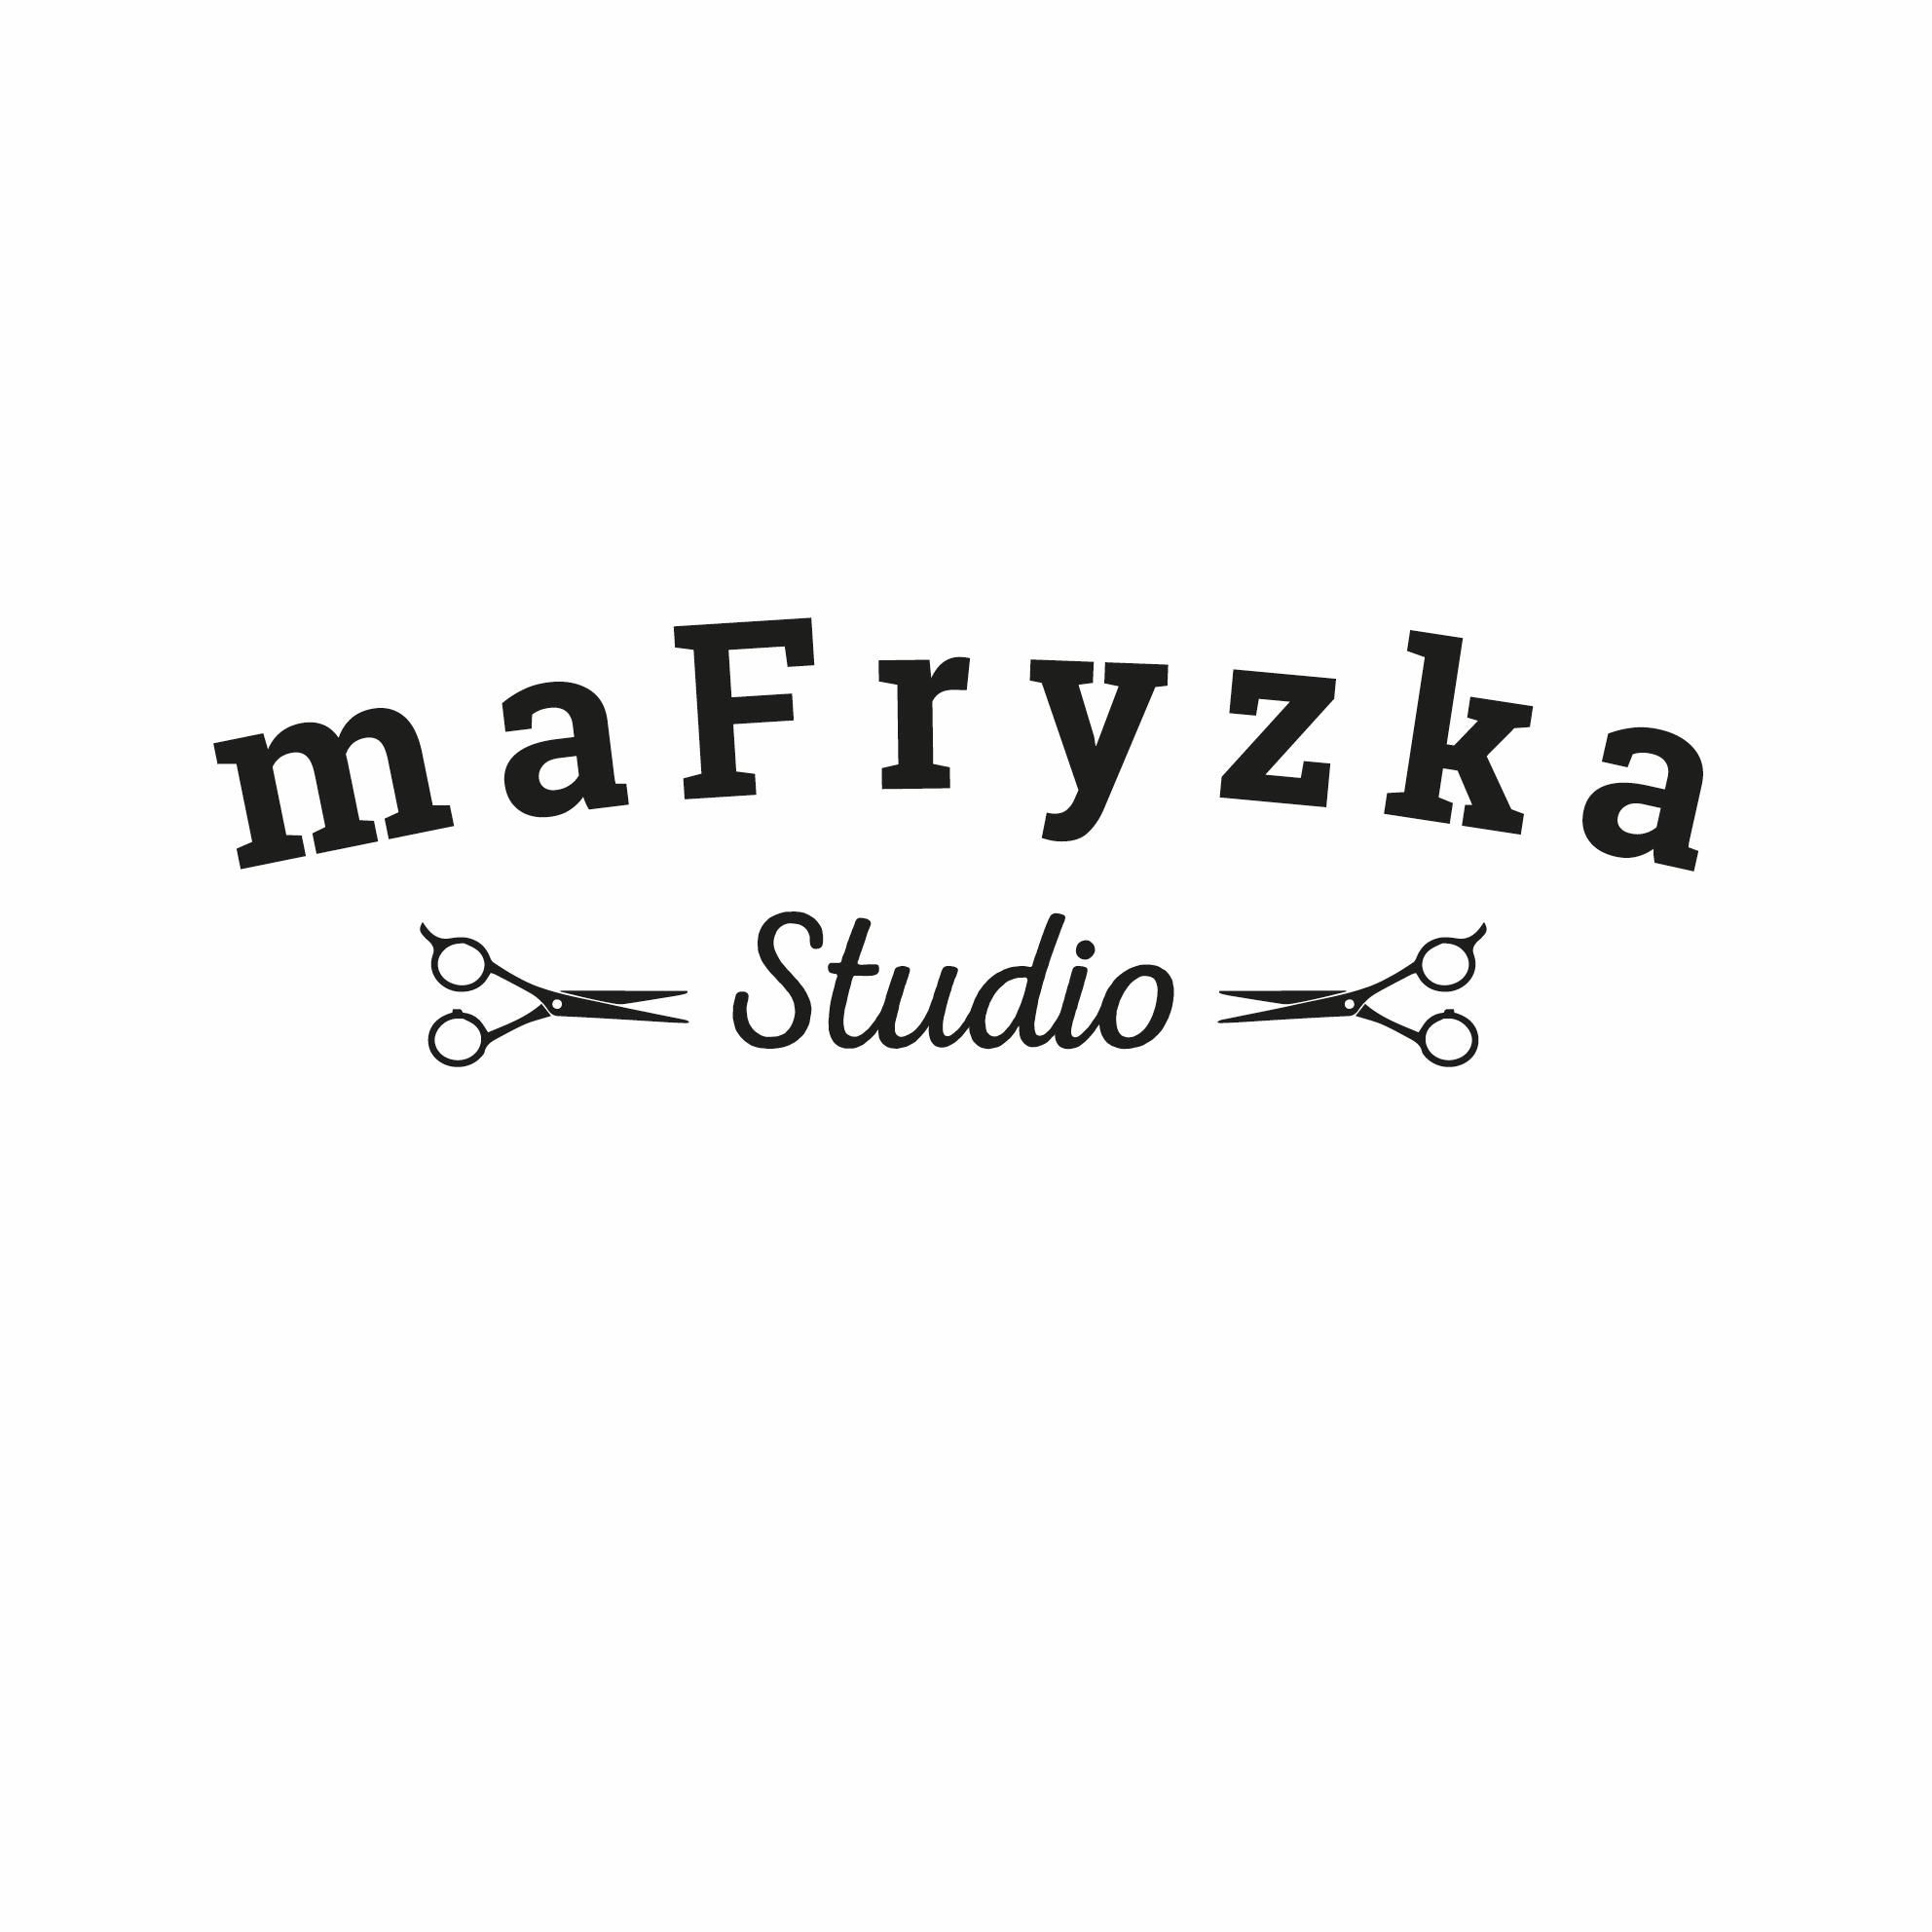 maFryzka Studio, Dzieci Warszawy 27A, 02-495, Warszawa, Ursus